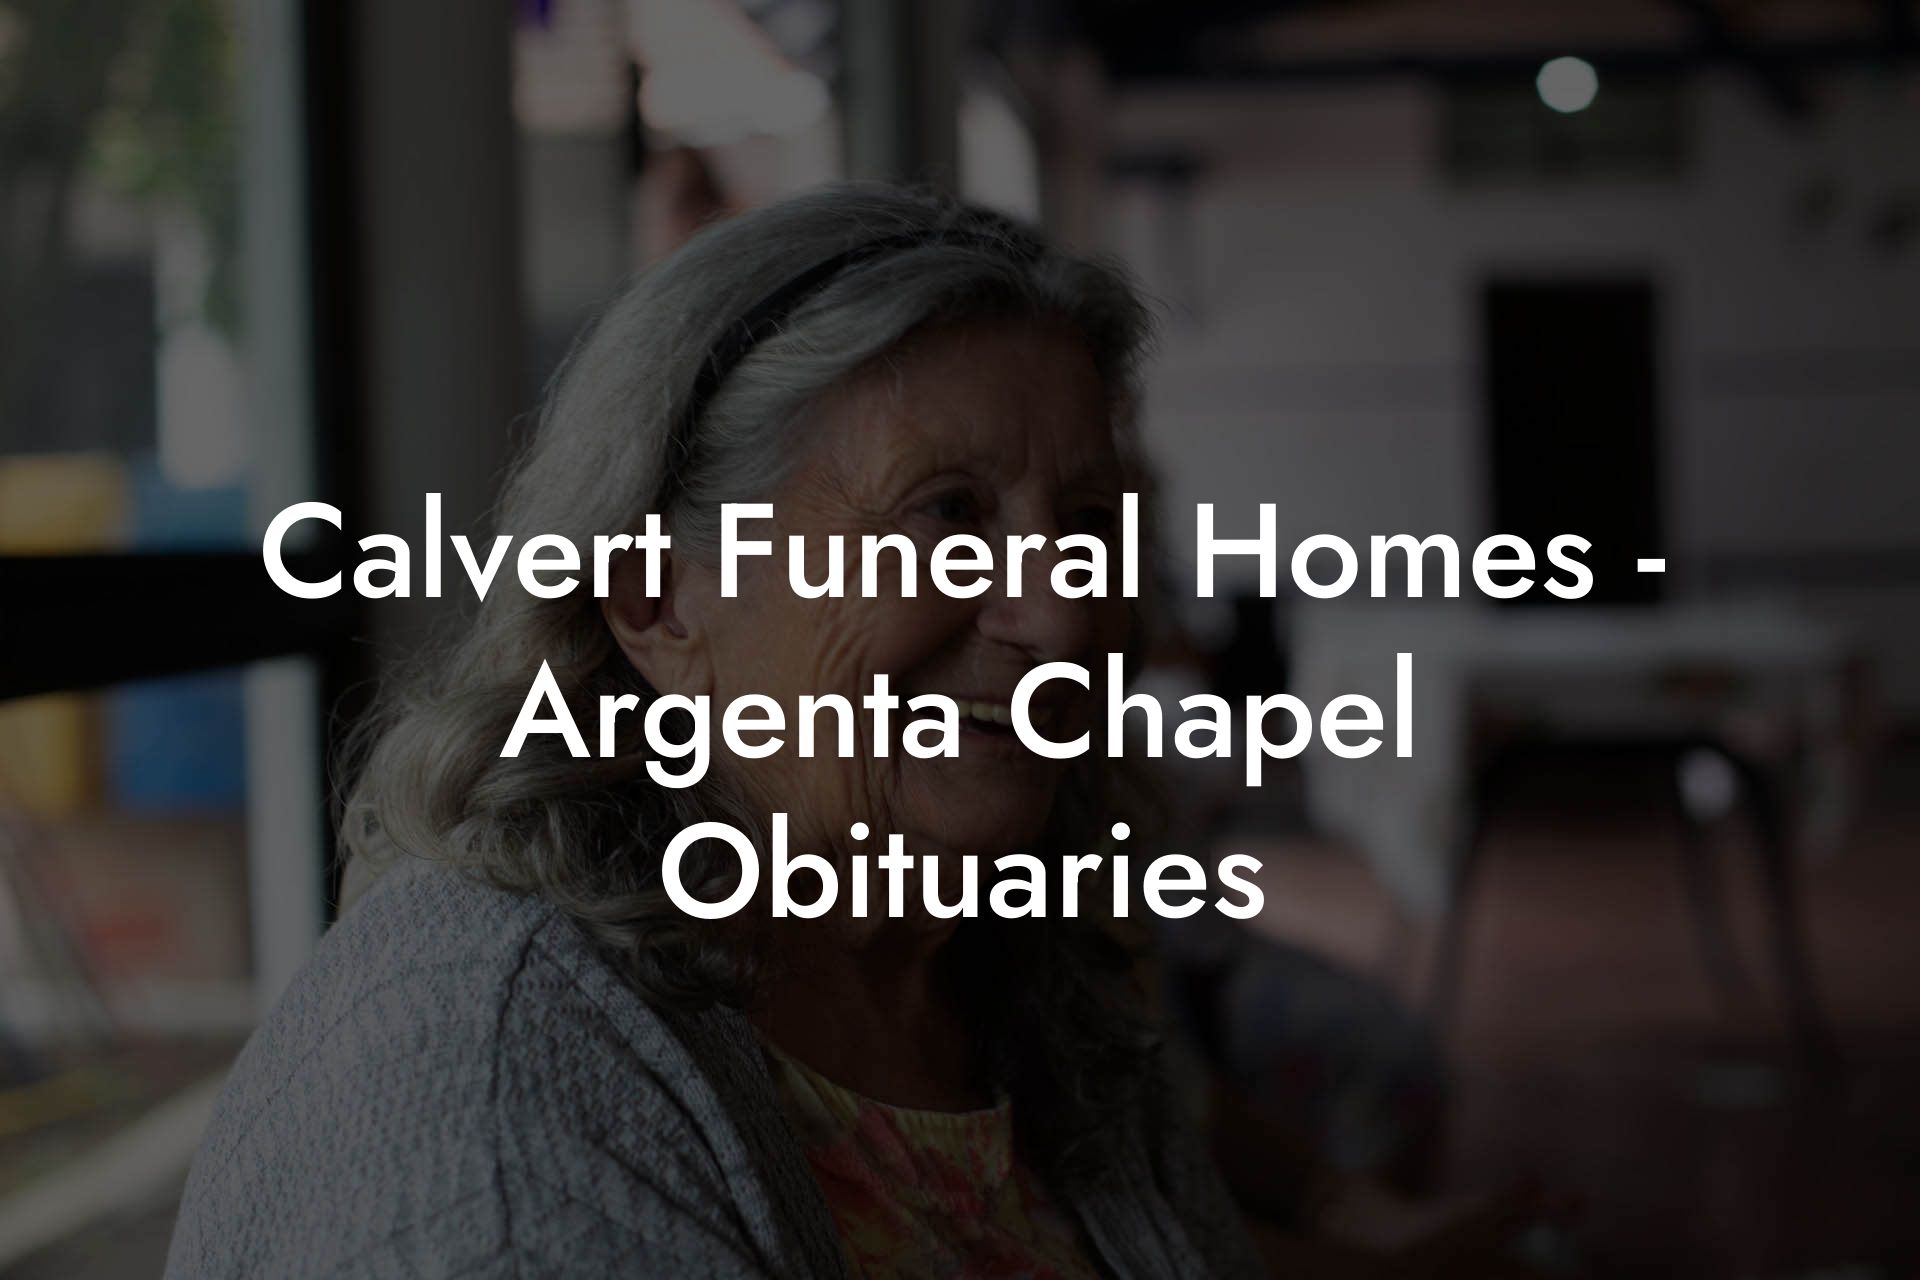 Calvert Funeral Homes - Argenta Chapel Obituaries